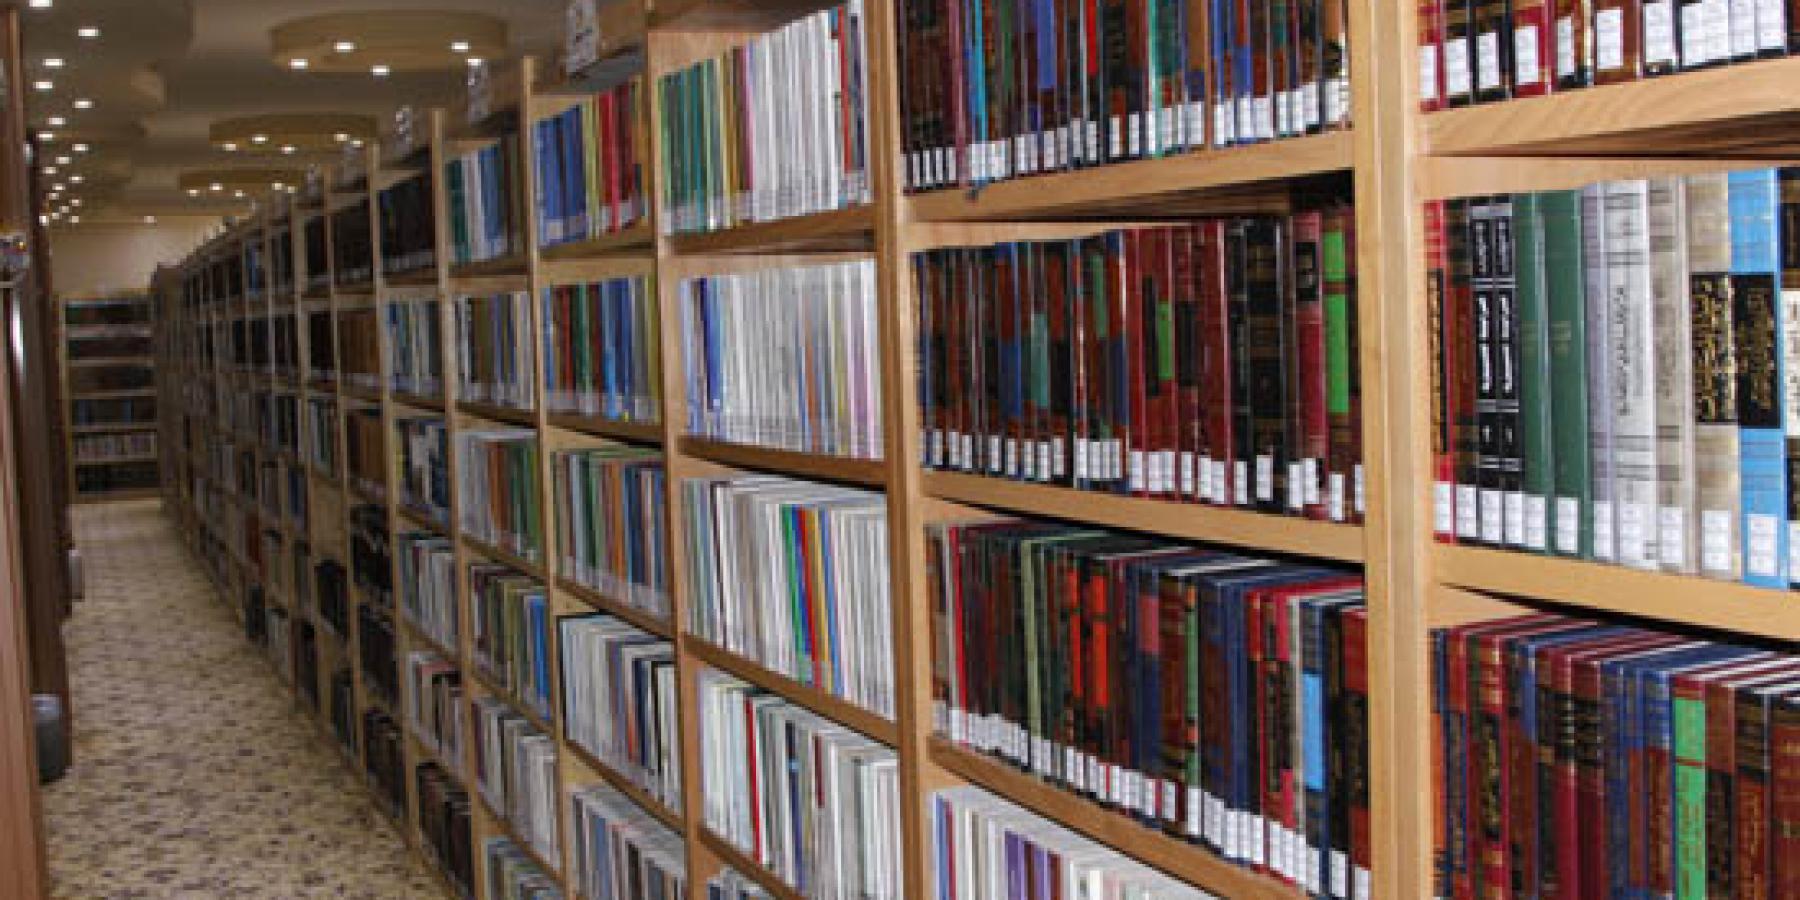 مكتبة الروضة الحيدرية توفر مصادر البحوث الأساسية للباحثين وتقوم بشراء أكثر من ثمانية آلاف كتاب